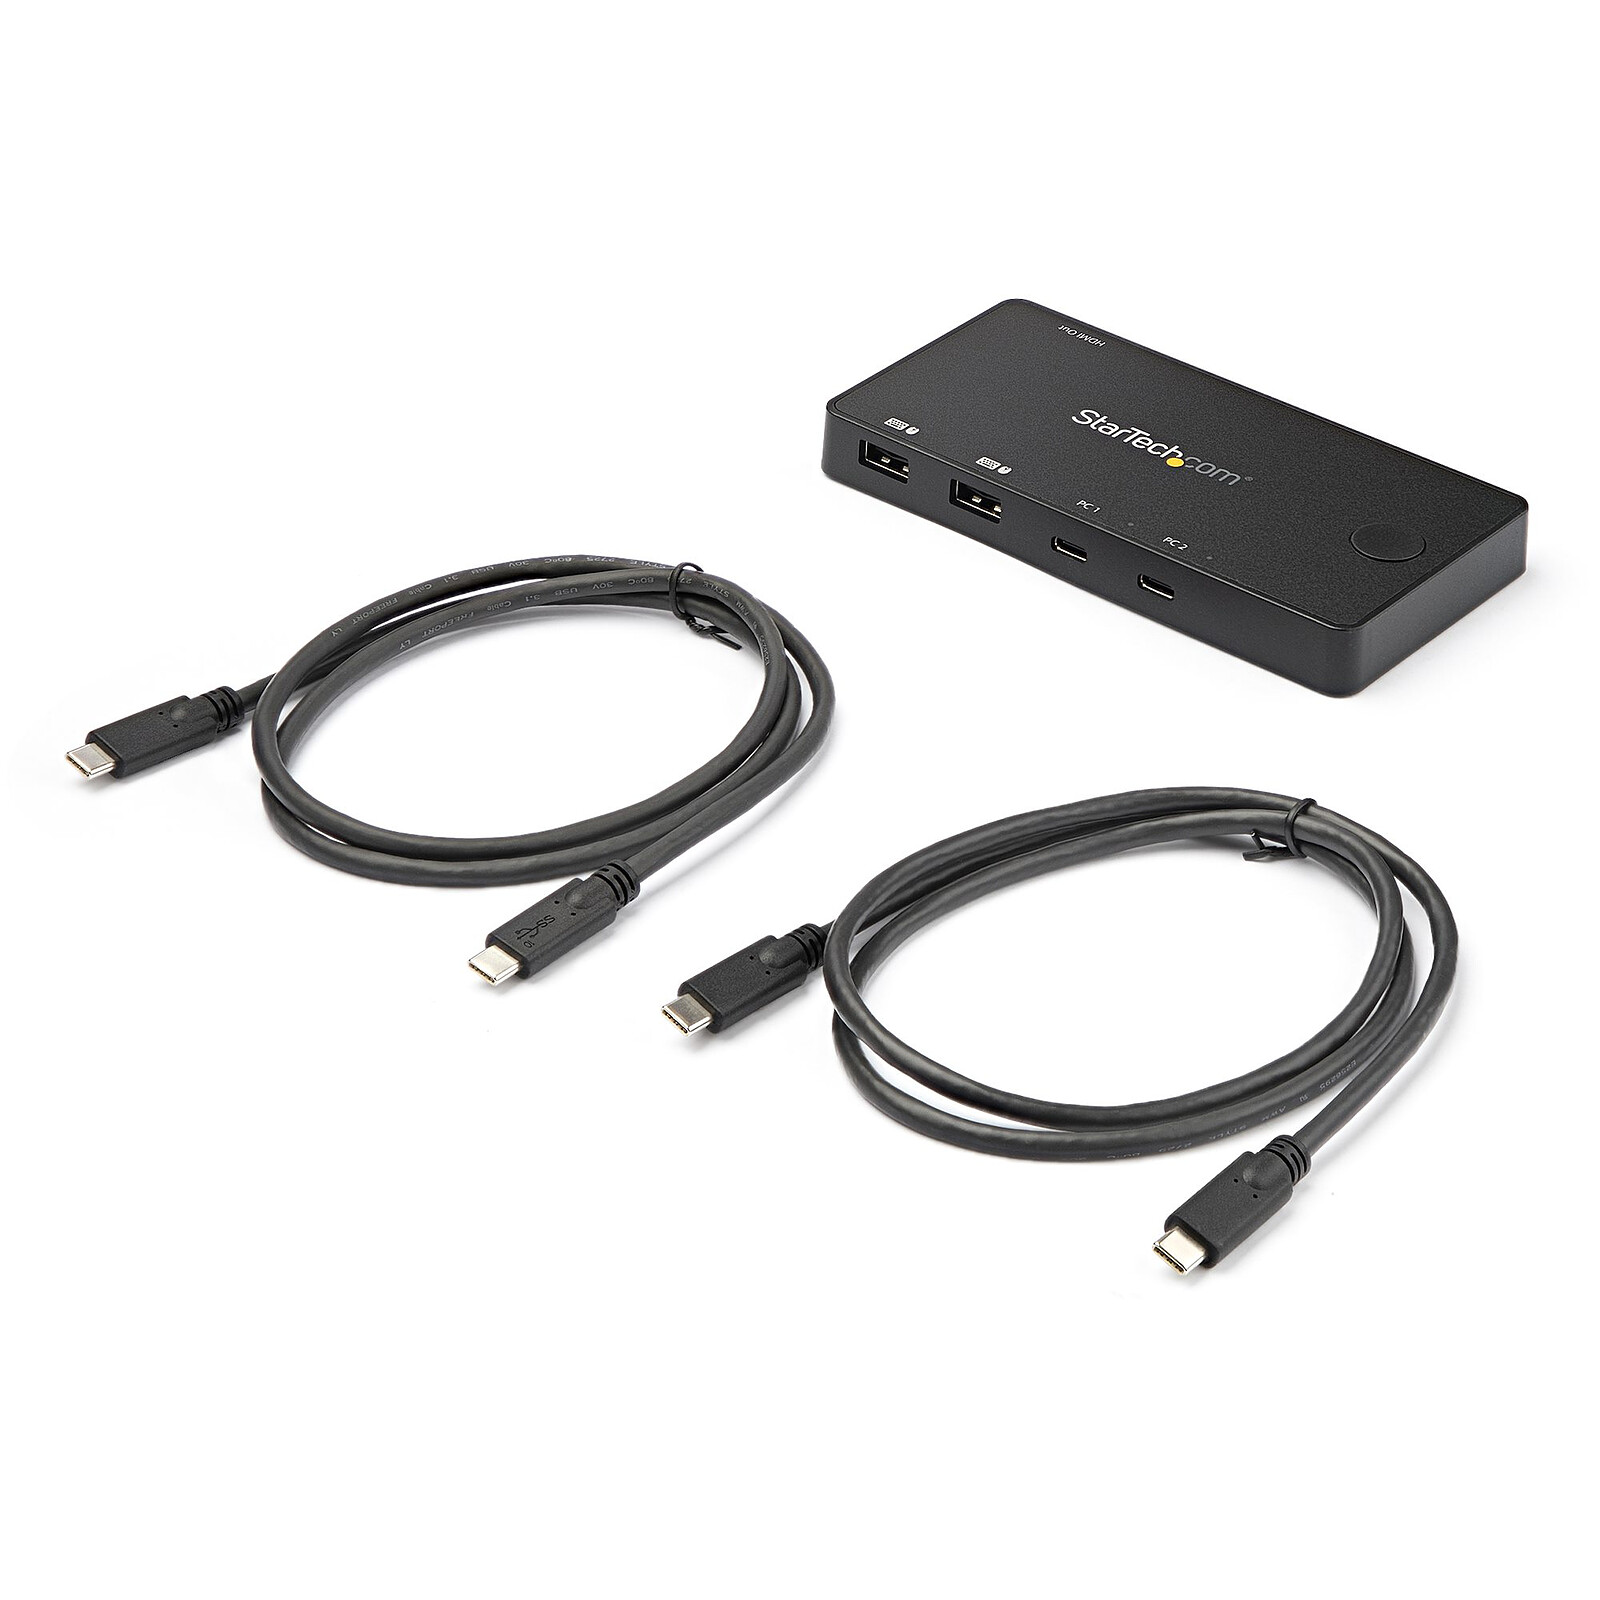 StarTech.com KVM switch écran clavier souris HDMI USB 3.0 - KVM - Garantie  3 ans LDLC